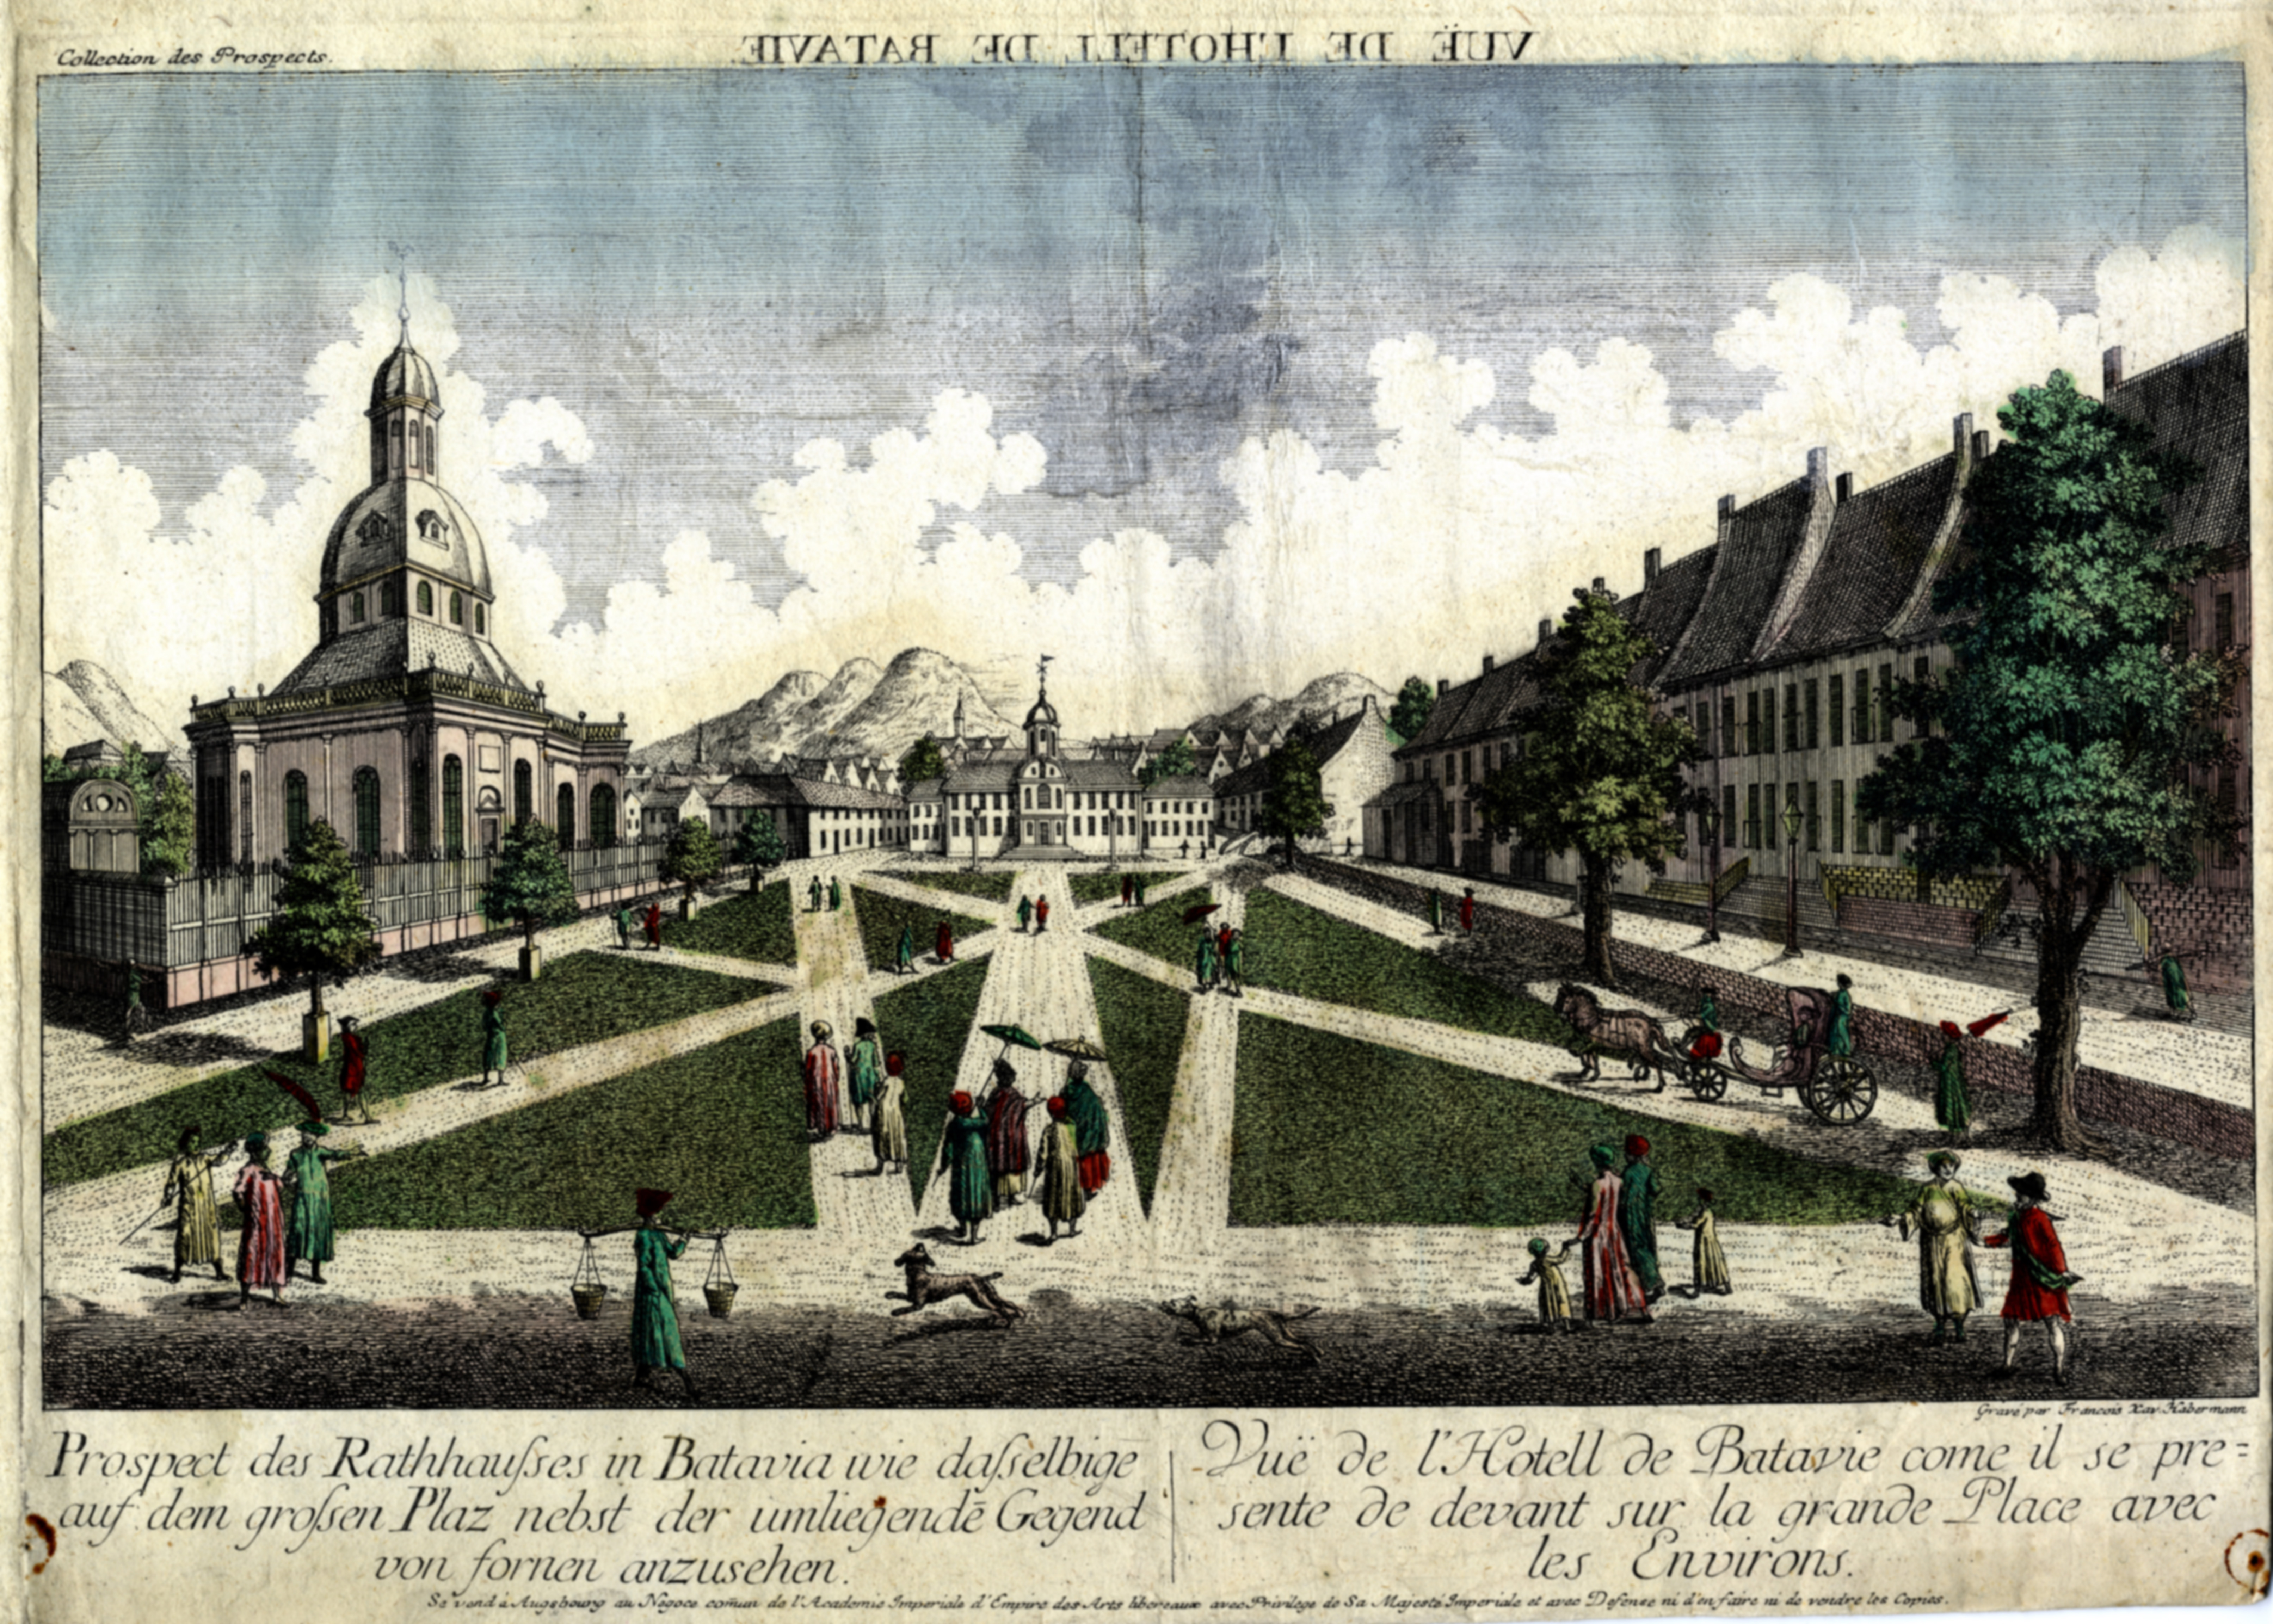 Stadhuis van Batavia, eind 18e eeuw.